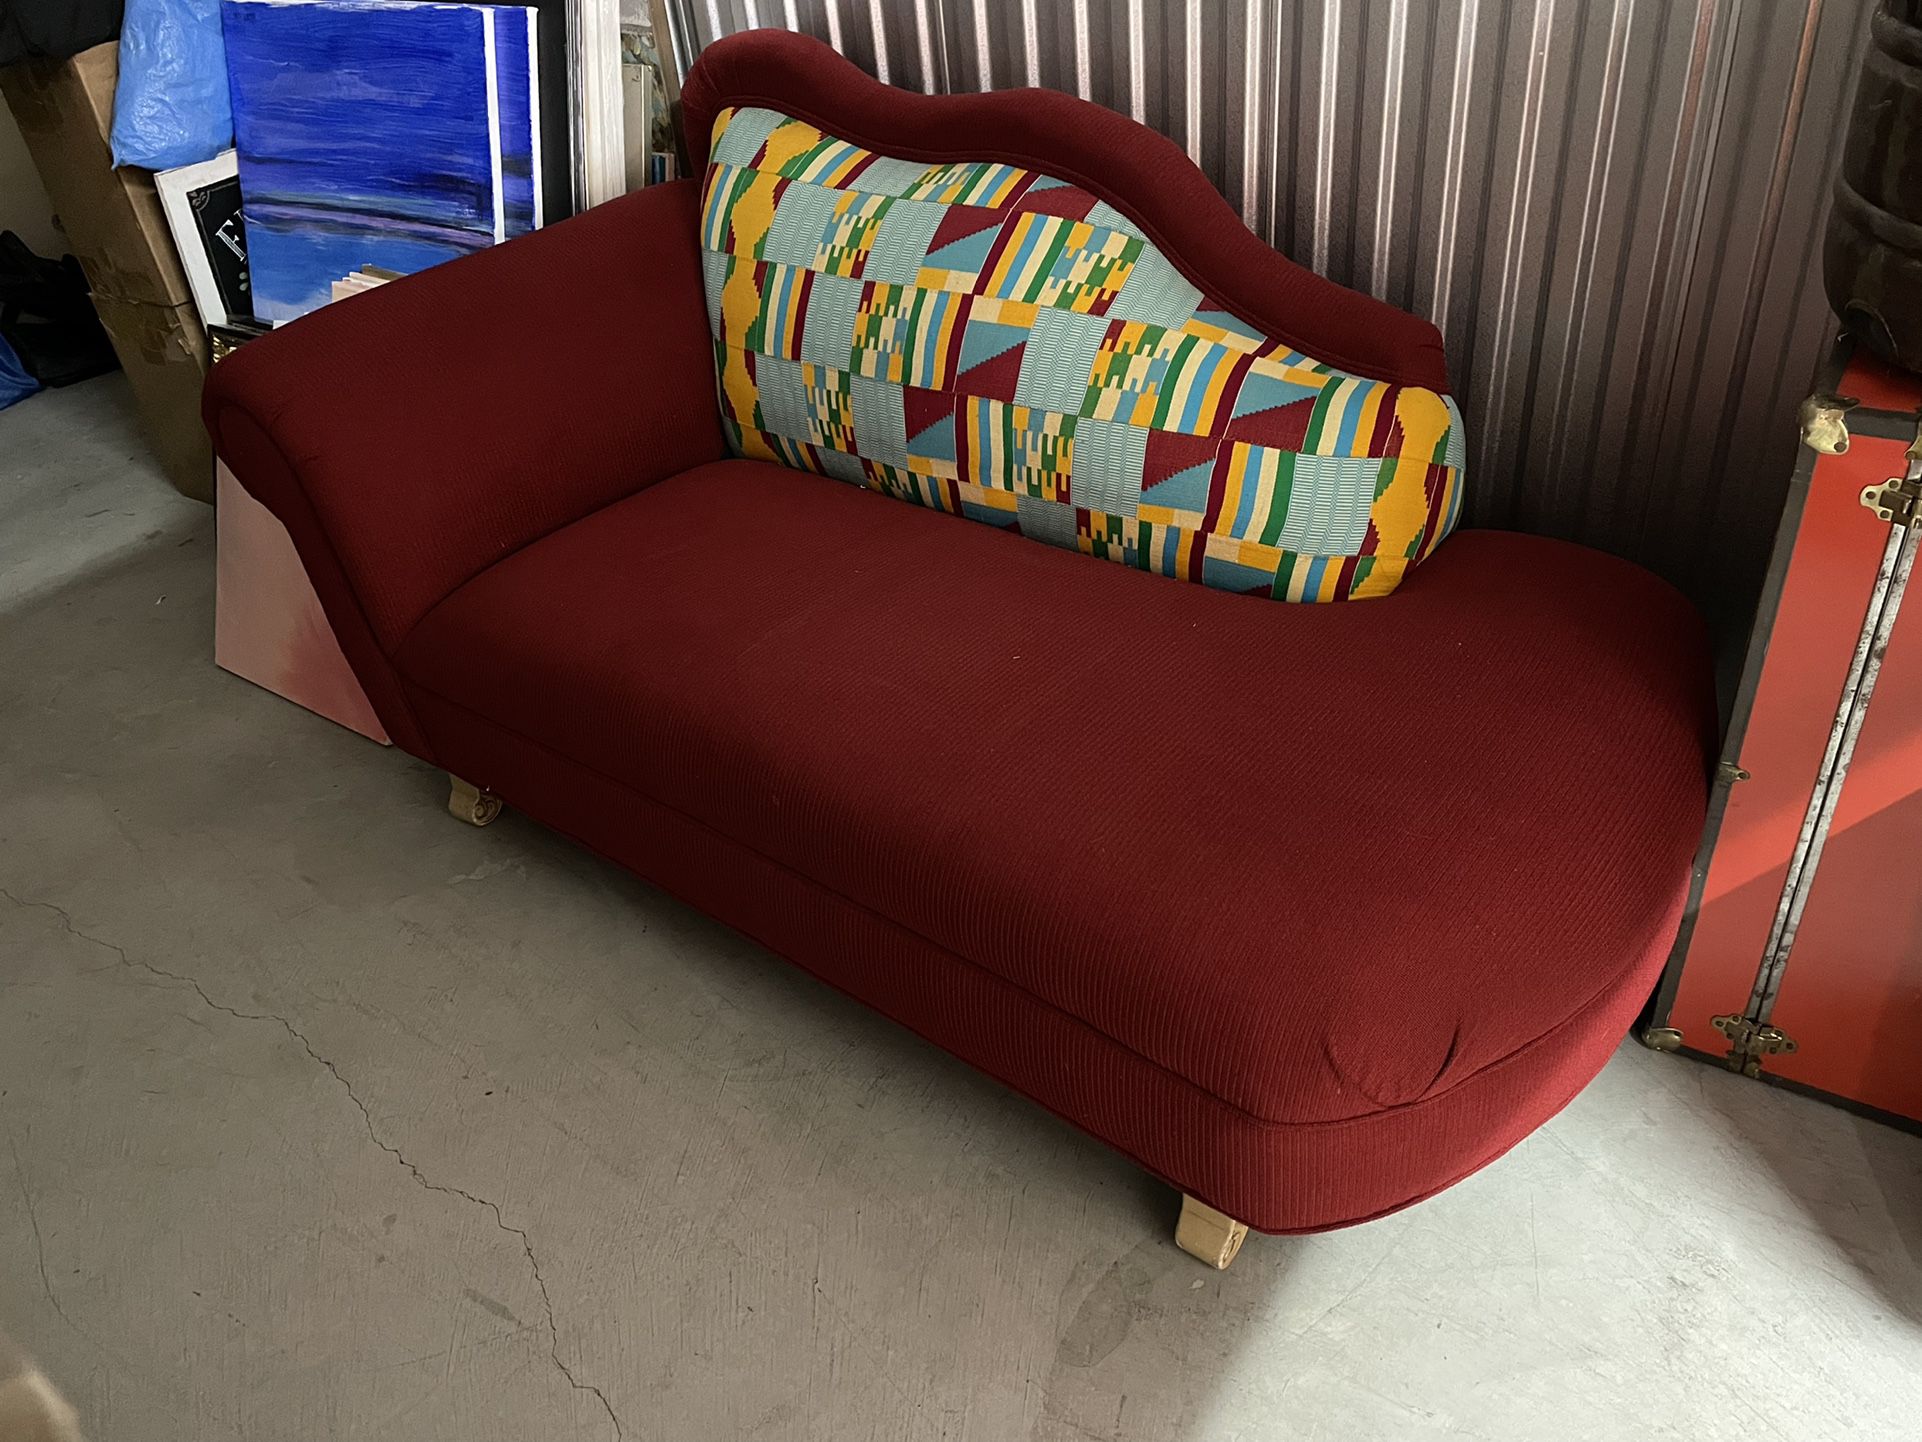 6ft Chase Lounge Sofa